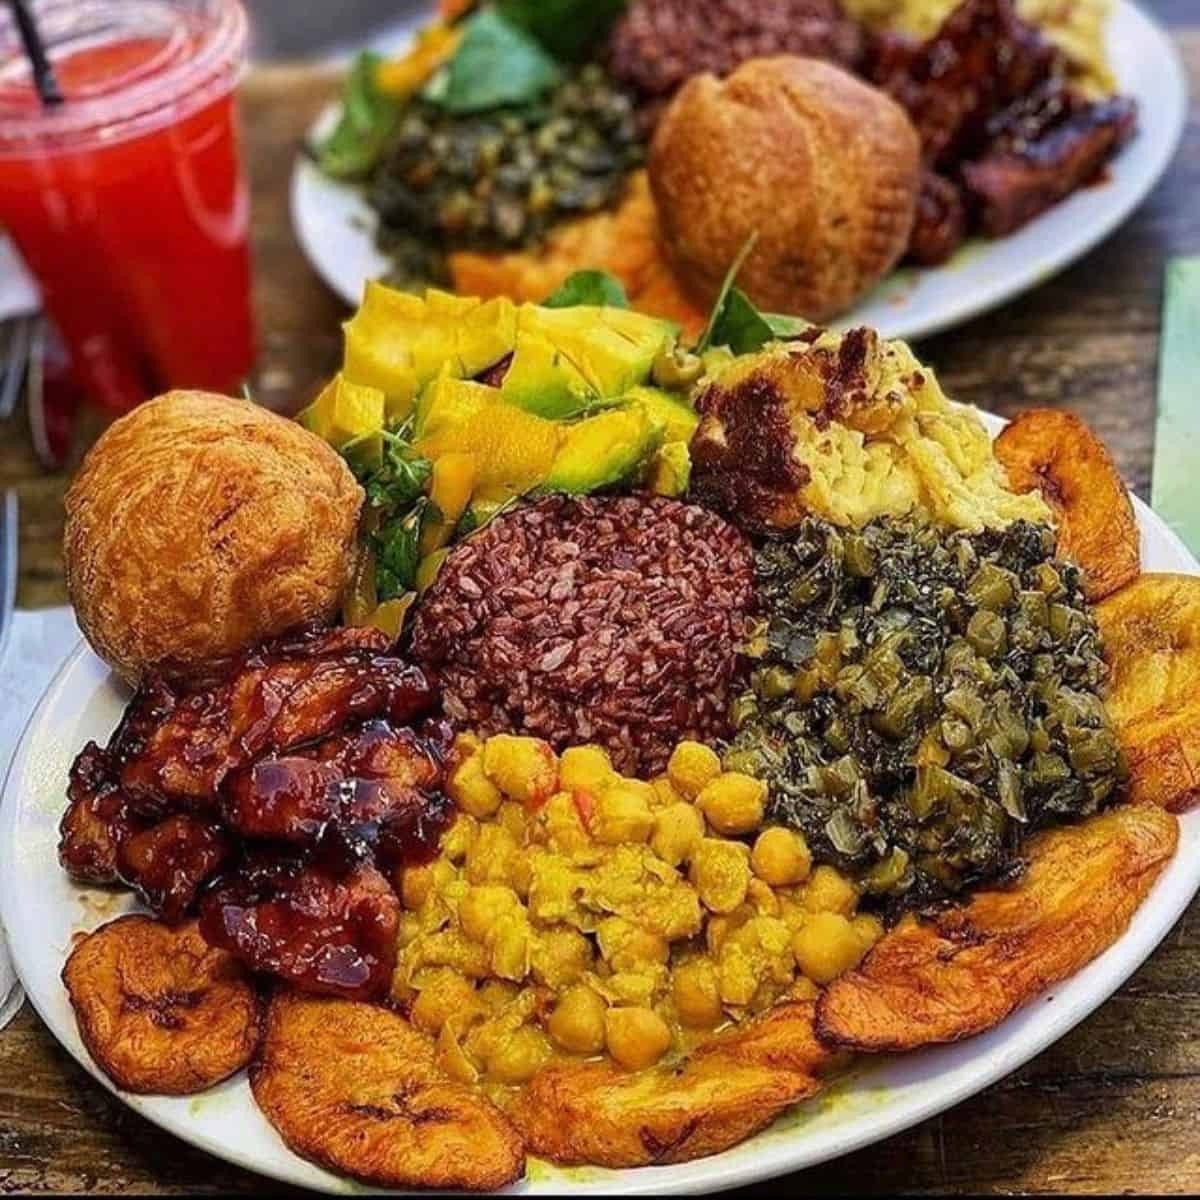 Amazing platter of vegan food Eat of Eden